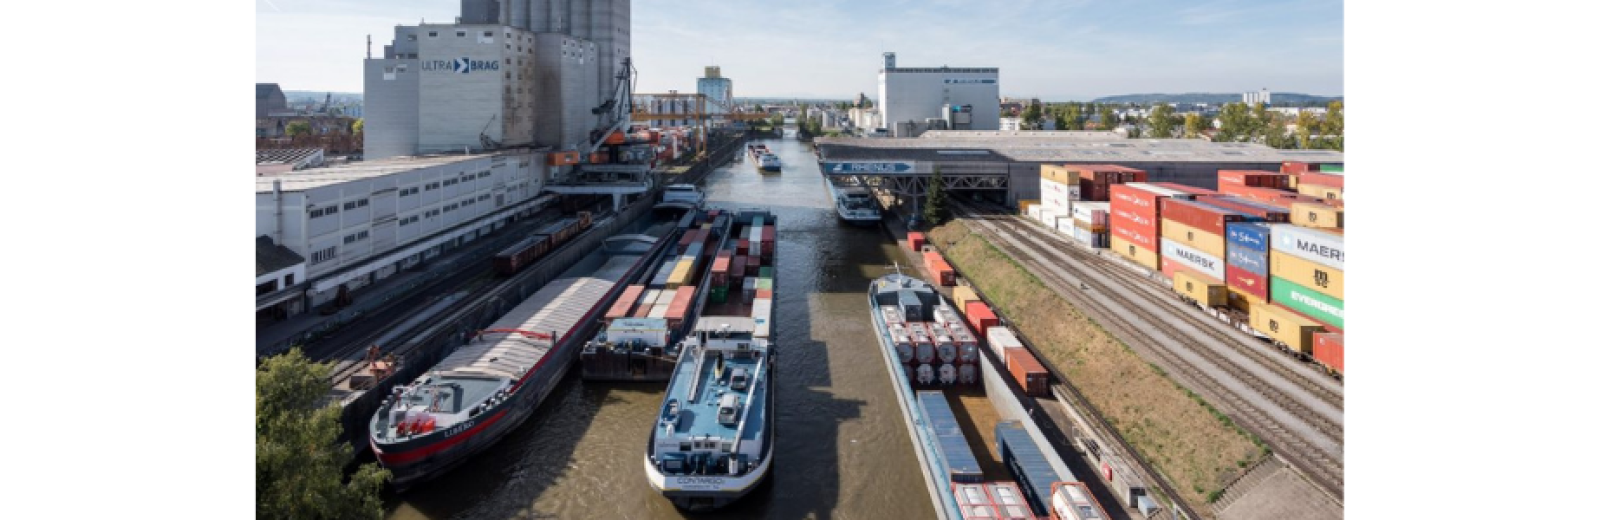 Jährlich werden allein in den Schweizer Rheinhäfen 6 Millionen Tonnen Güter umgeschlagen. © Patrik Walde